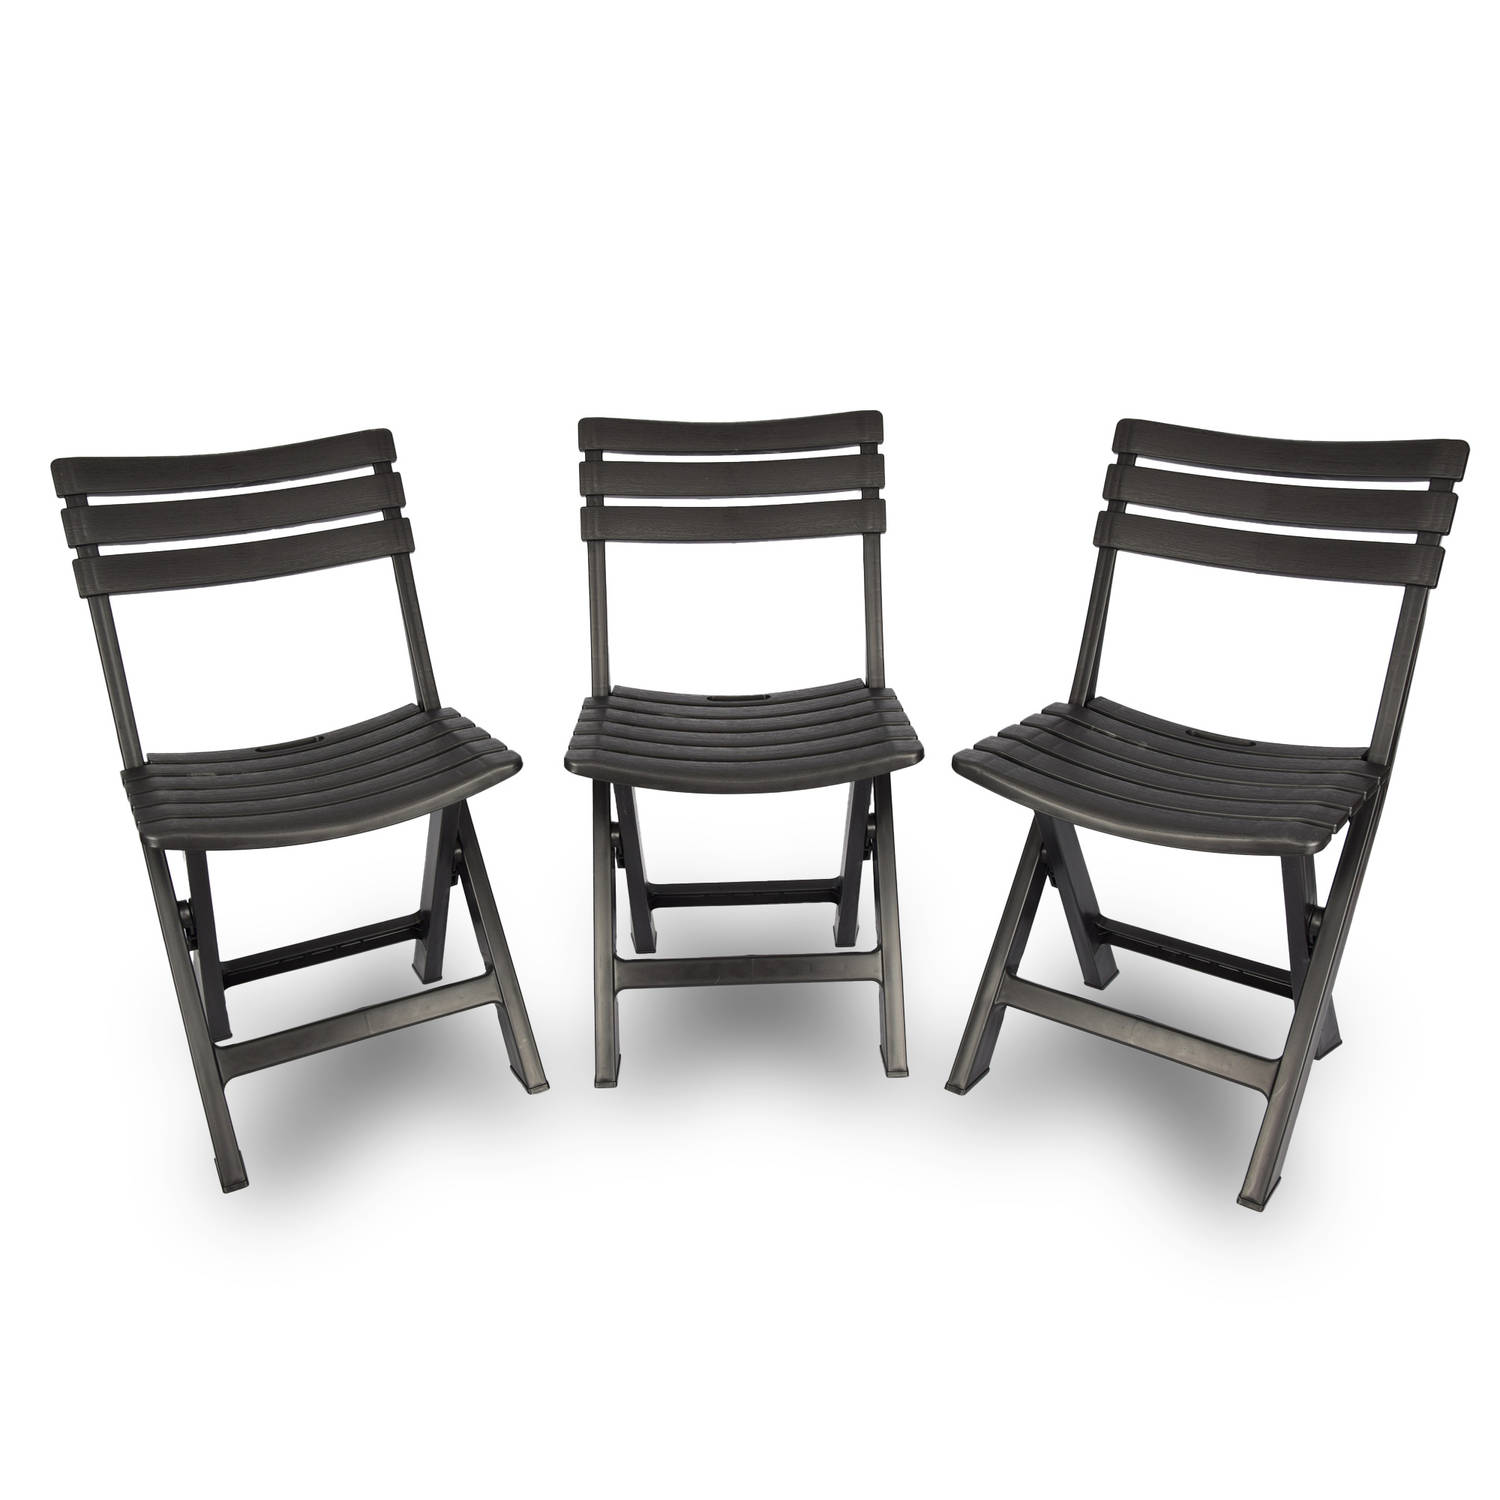 3x Klapstoel Opvouwbare stoel Campingstoel Tuinstoel Zwart Kunststof Duurzaam Comfortabel Voor binne